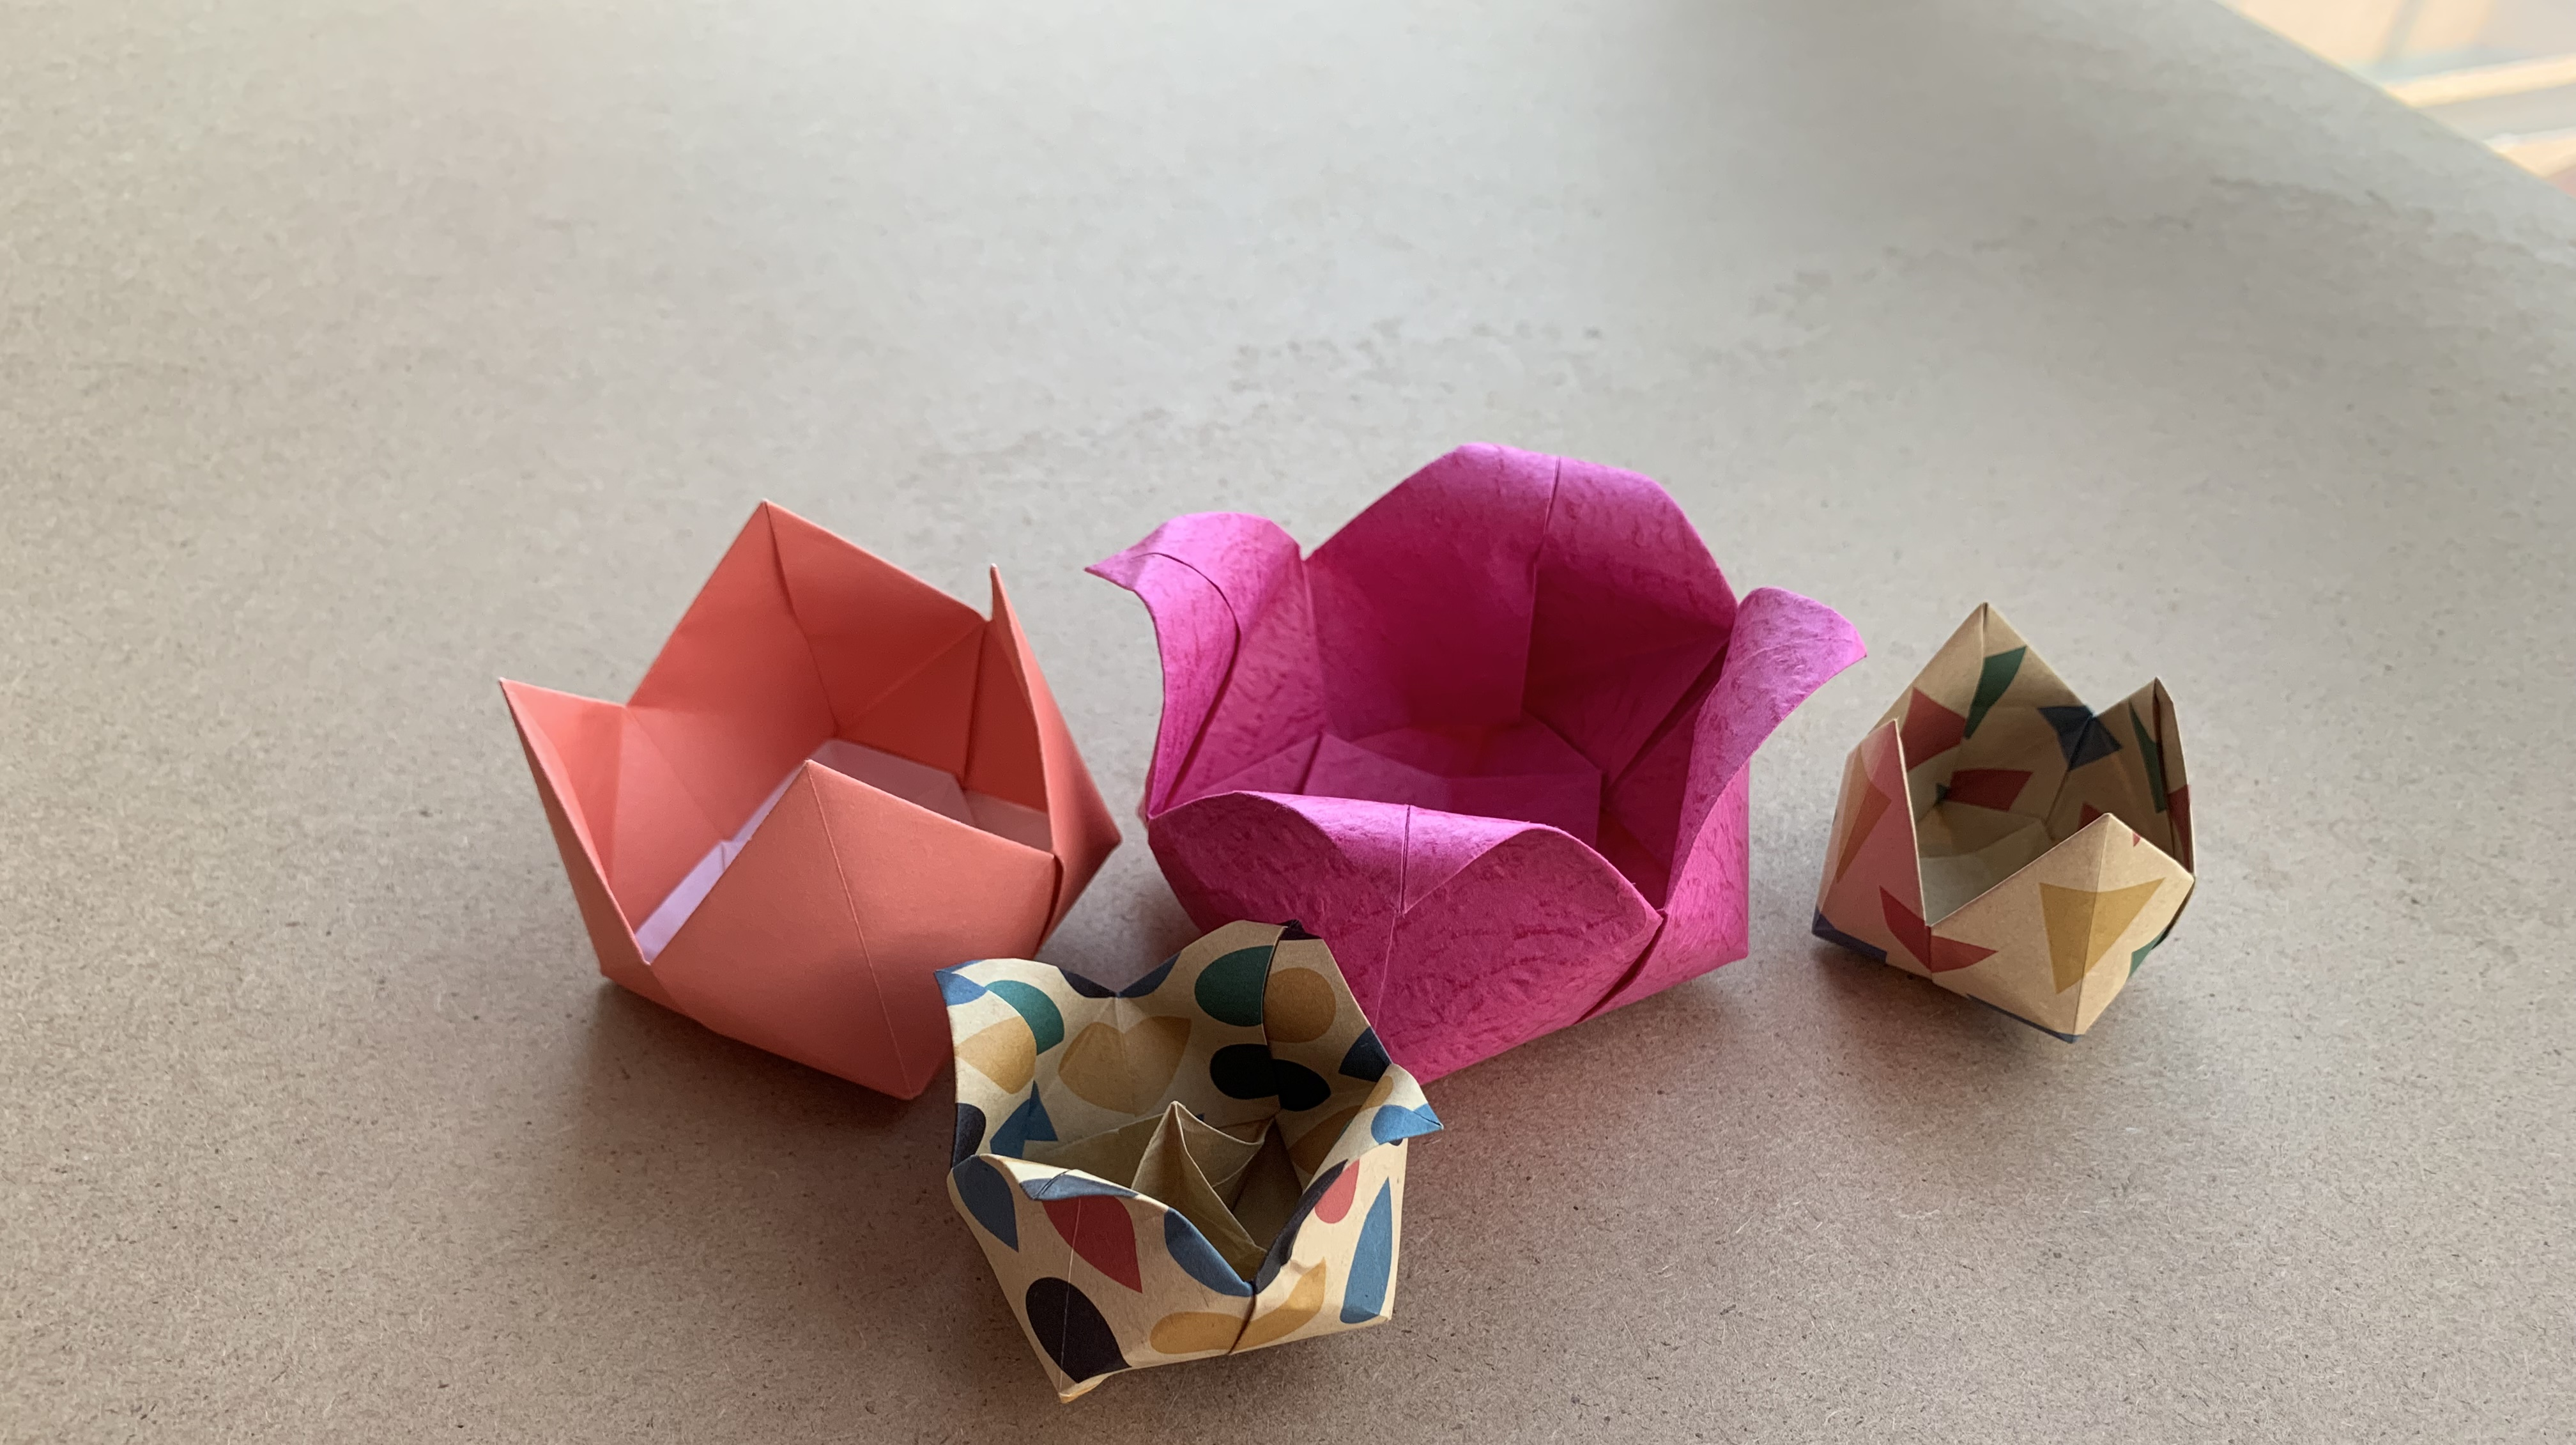 夏天爱折纸:《折纸大全》视频合集